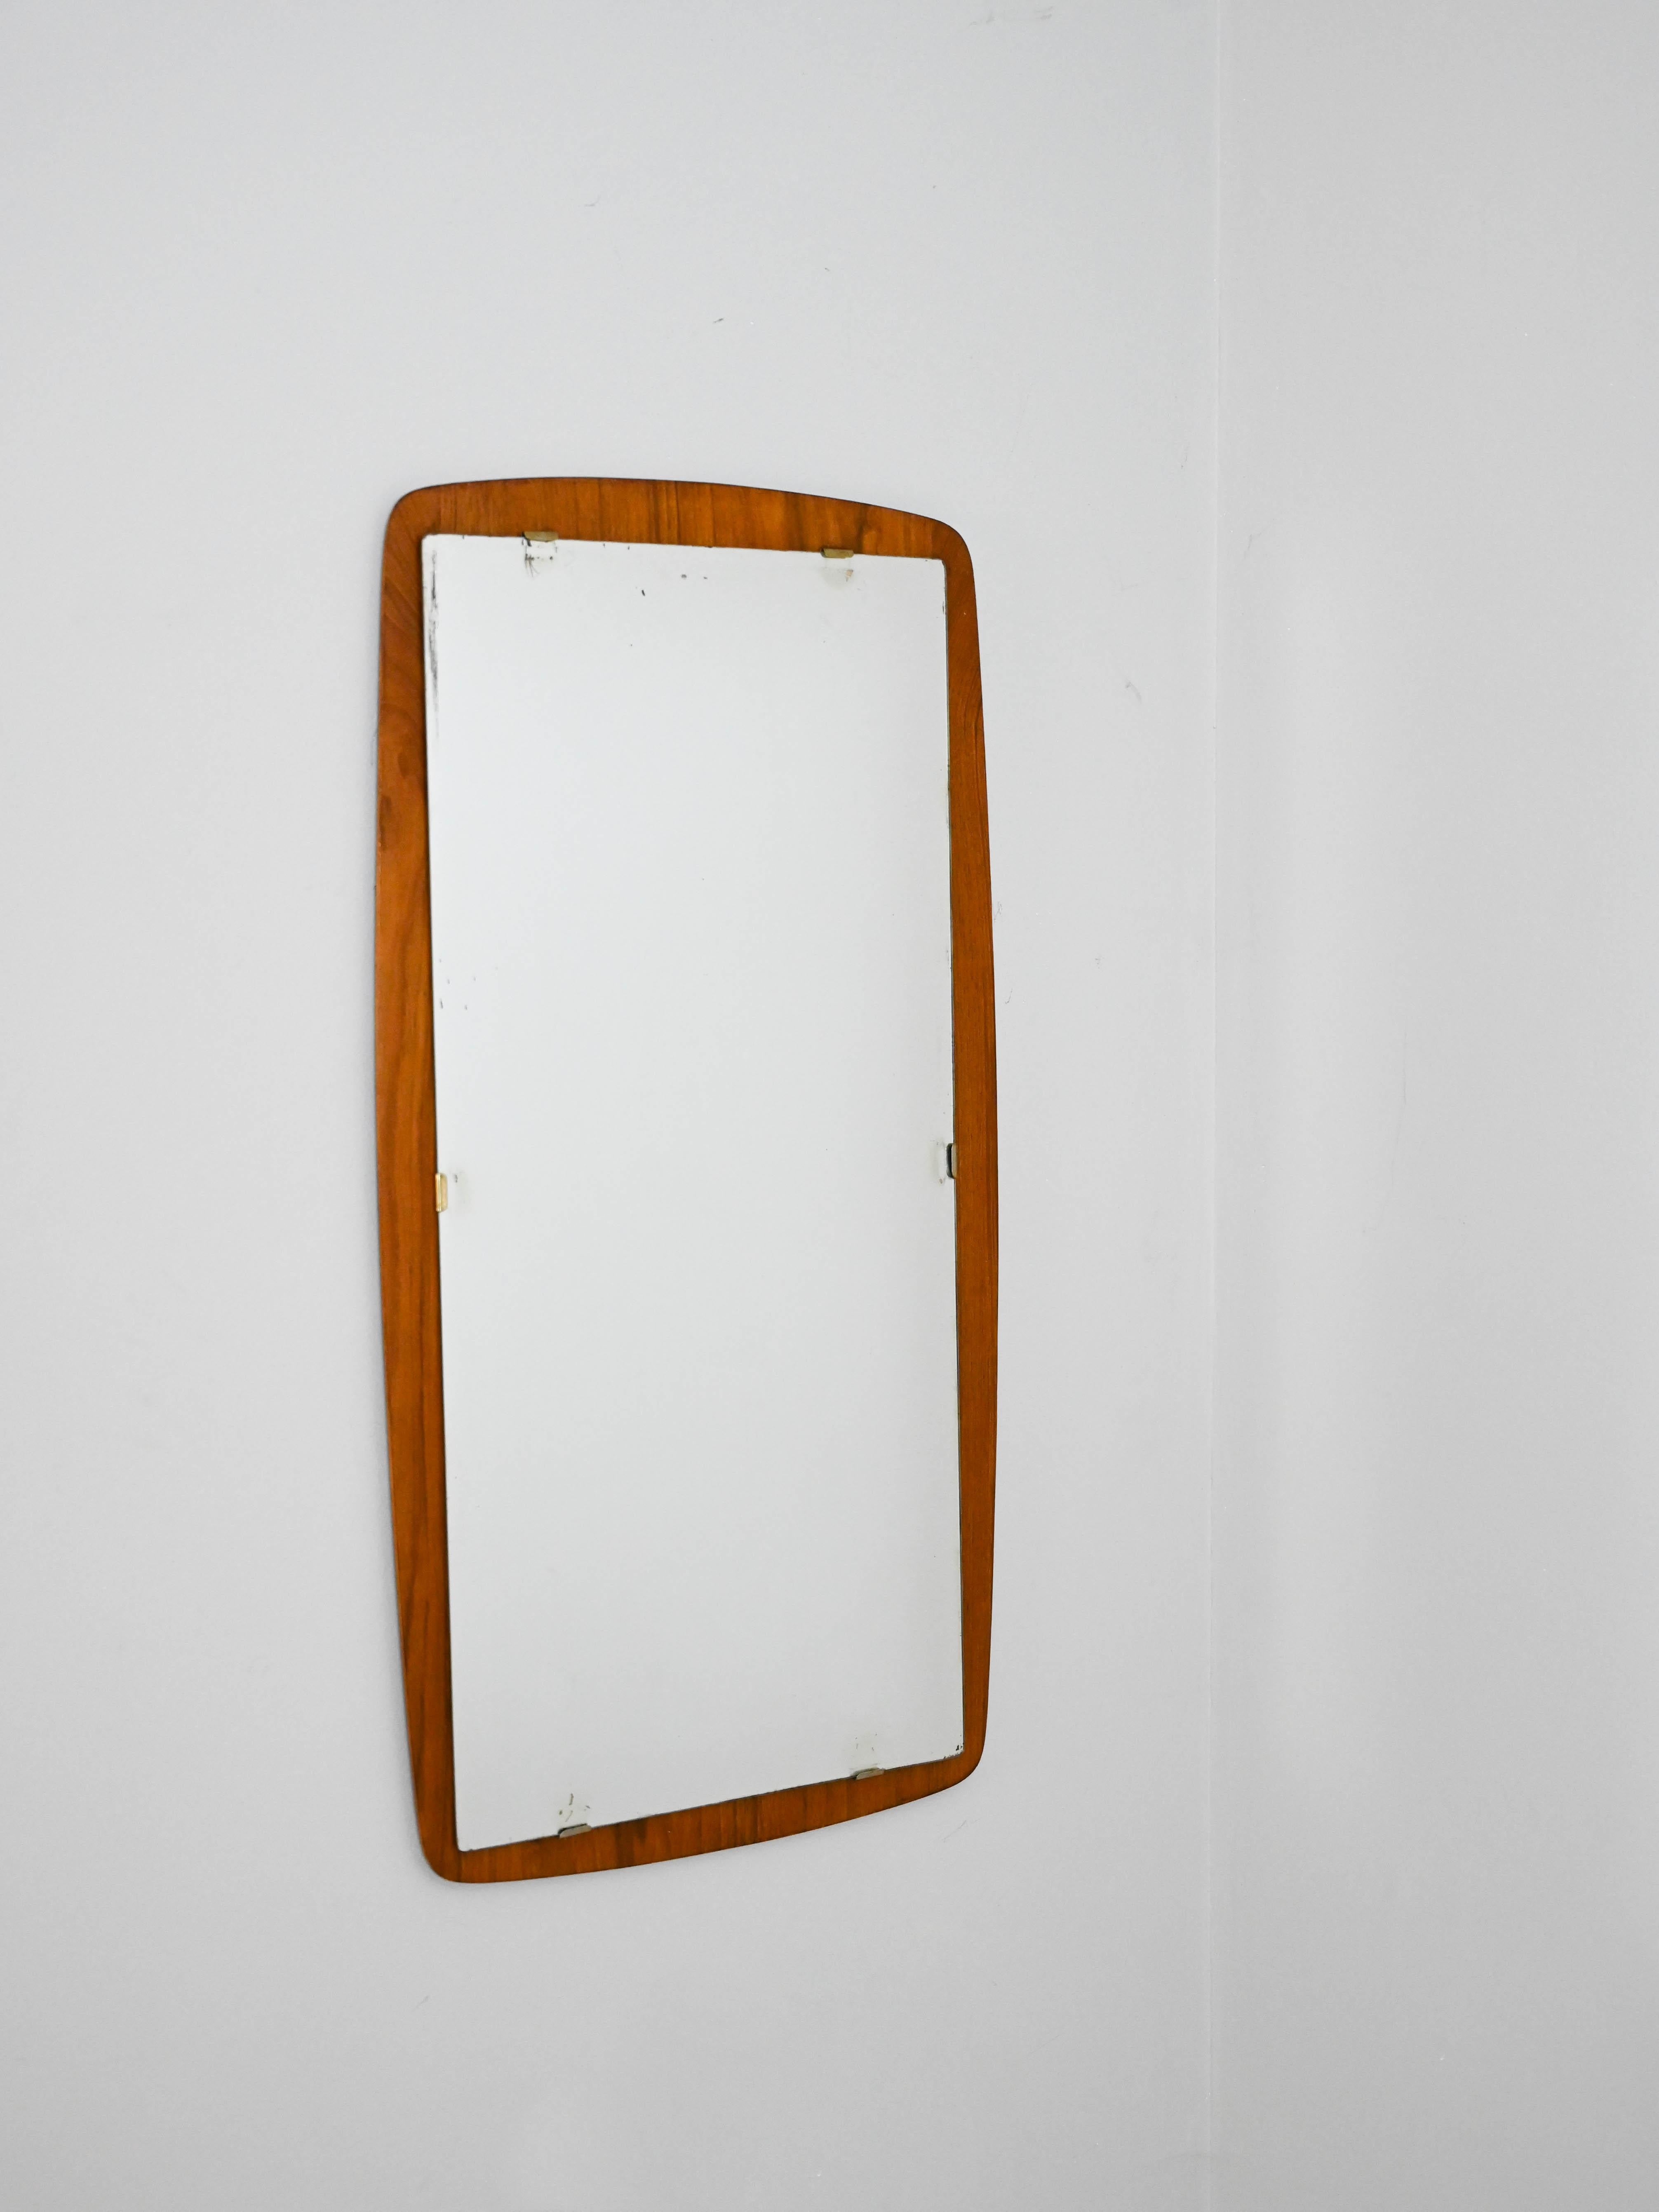 Miroir avec cadre en teck incurvé.

Un miroir simple et léger avec un cadre en teck sur lequel repose le miroir.
Parfait pour n'importe quelle pièce, essayez-le dans l'entrée avec une petite table ou un banc en dessous, dans un style scandinave